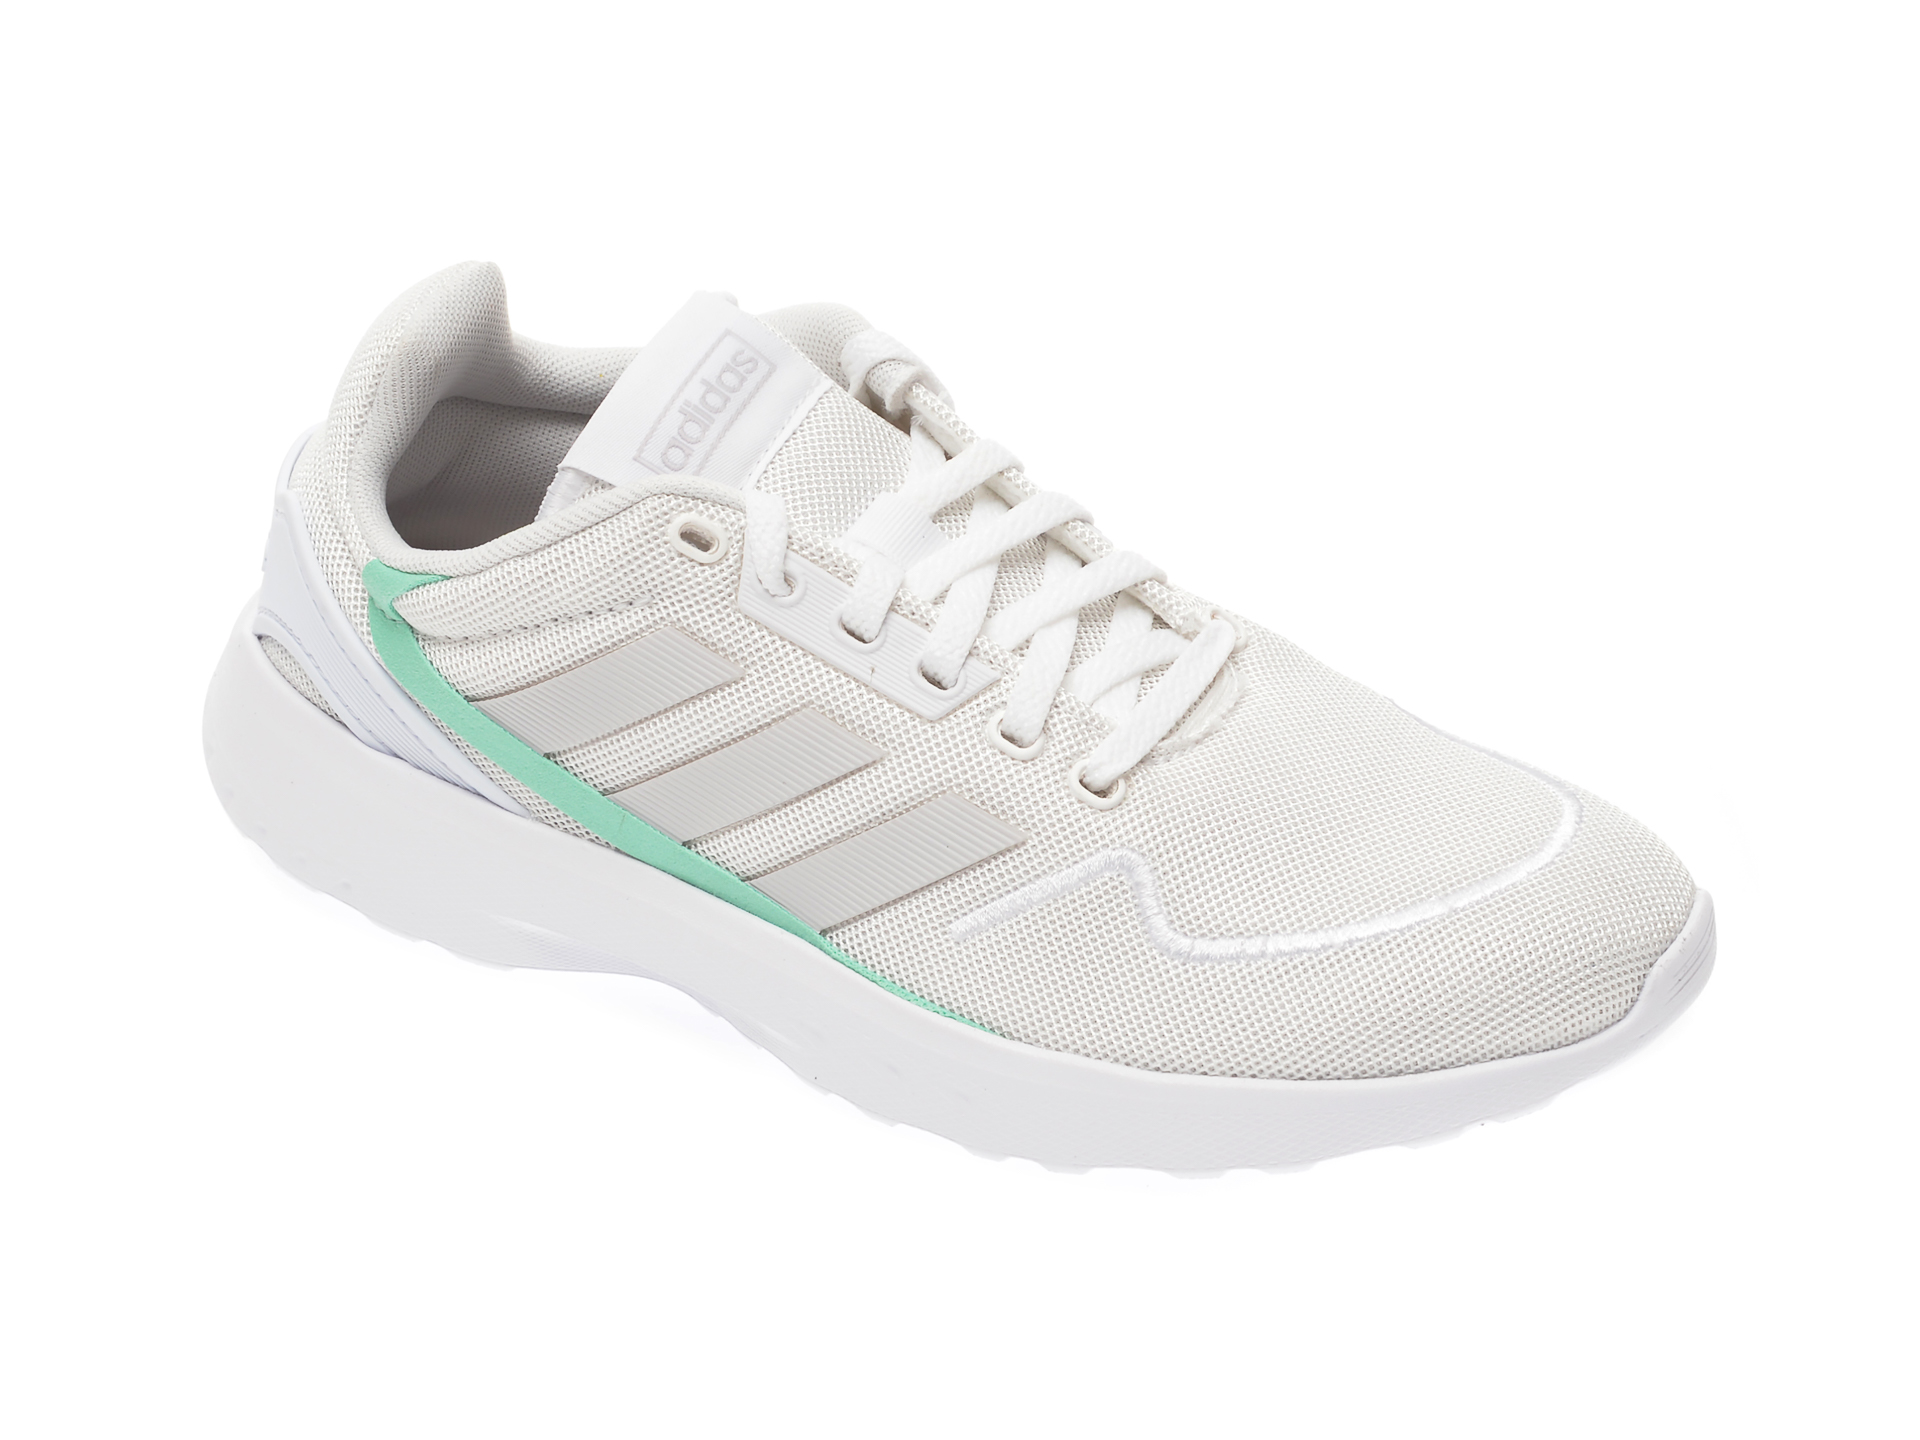 Pantofi sport ADIDAS albi, Nebzed, din material textil